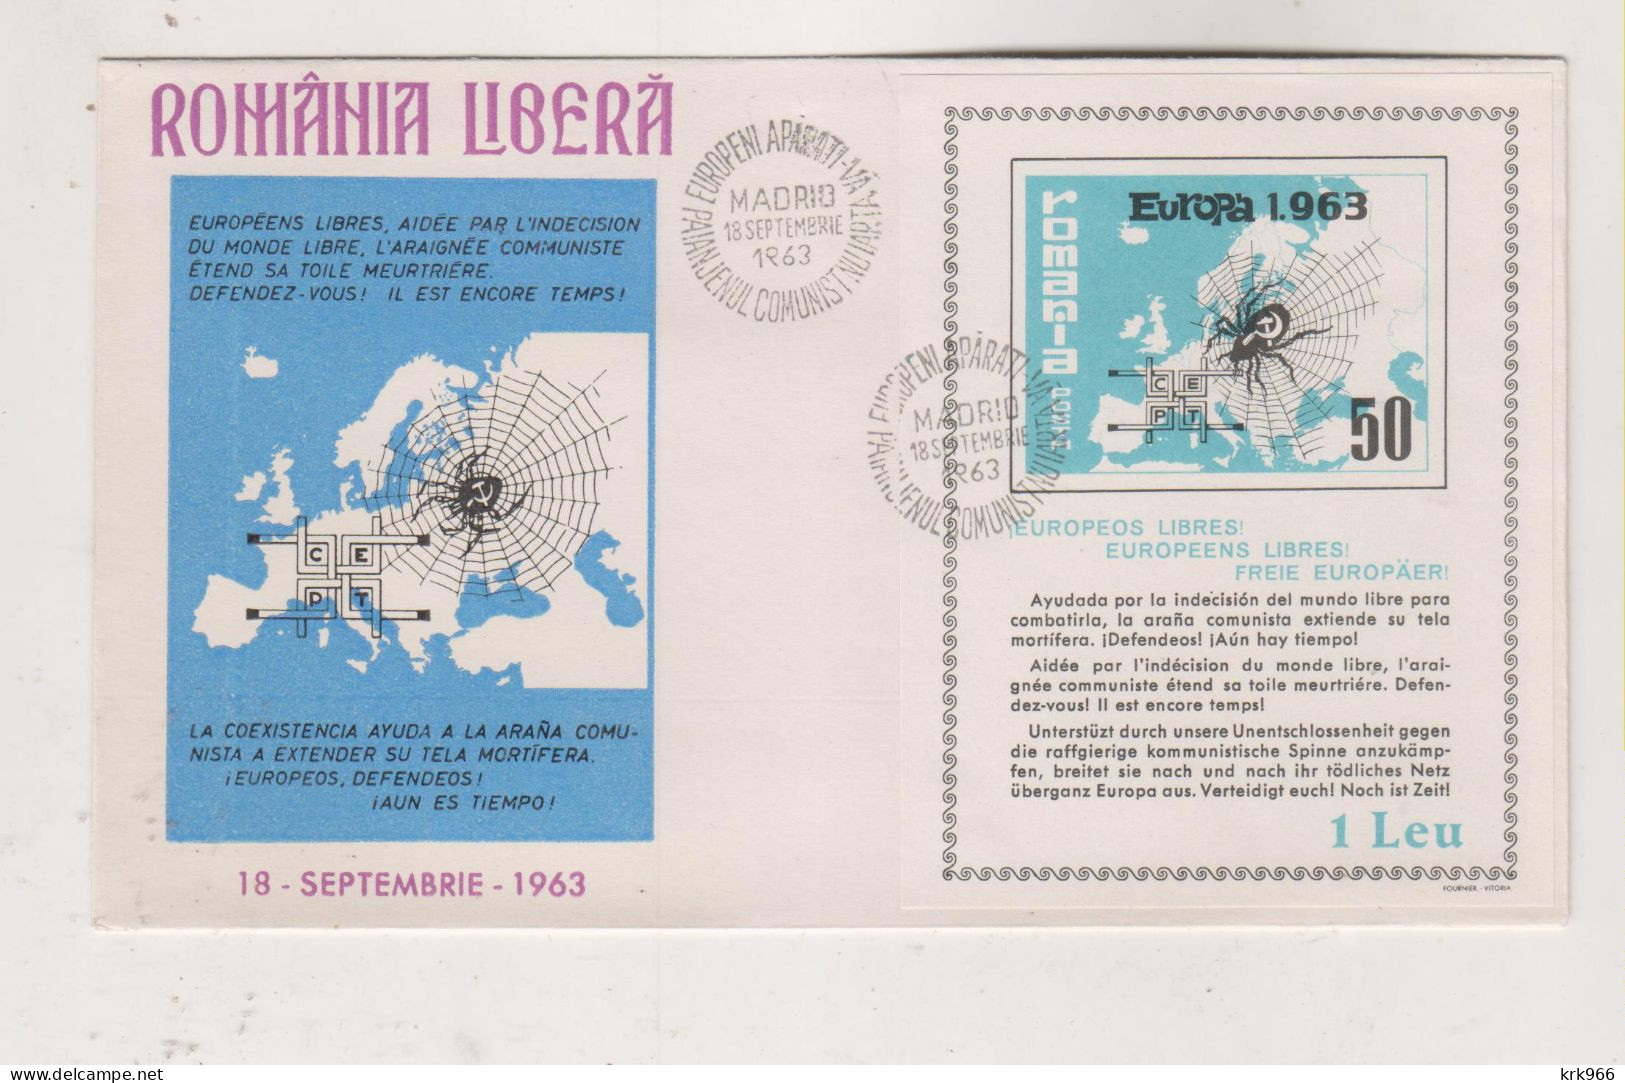 ROMANIA  1962  EXILE   Cover - Cartas & Documentos